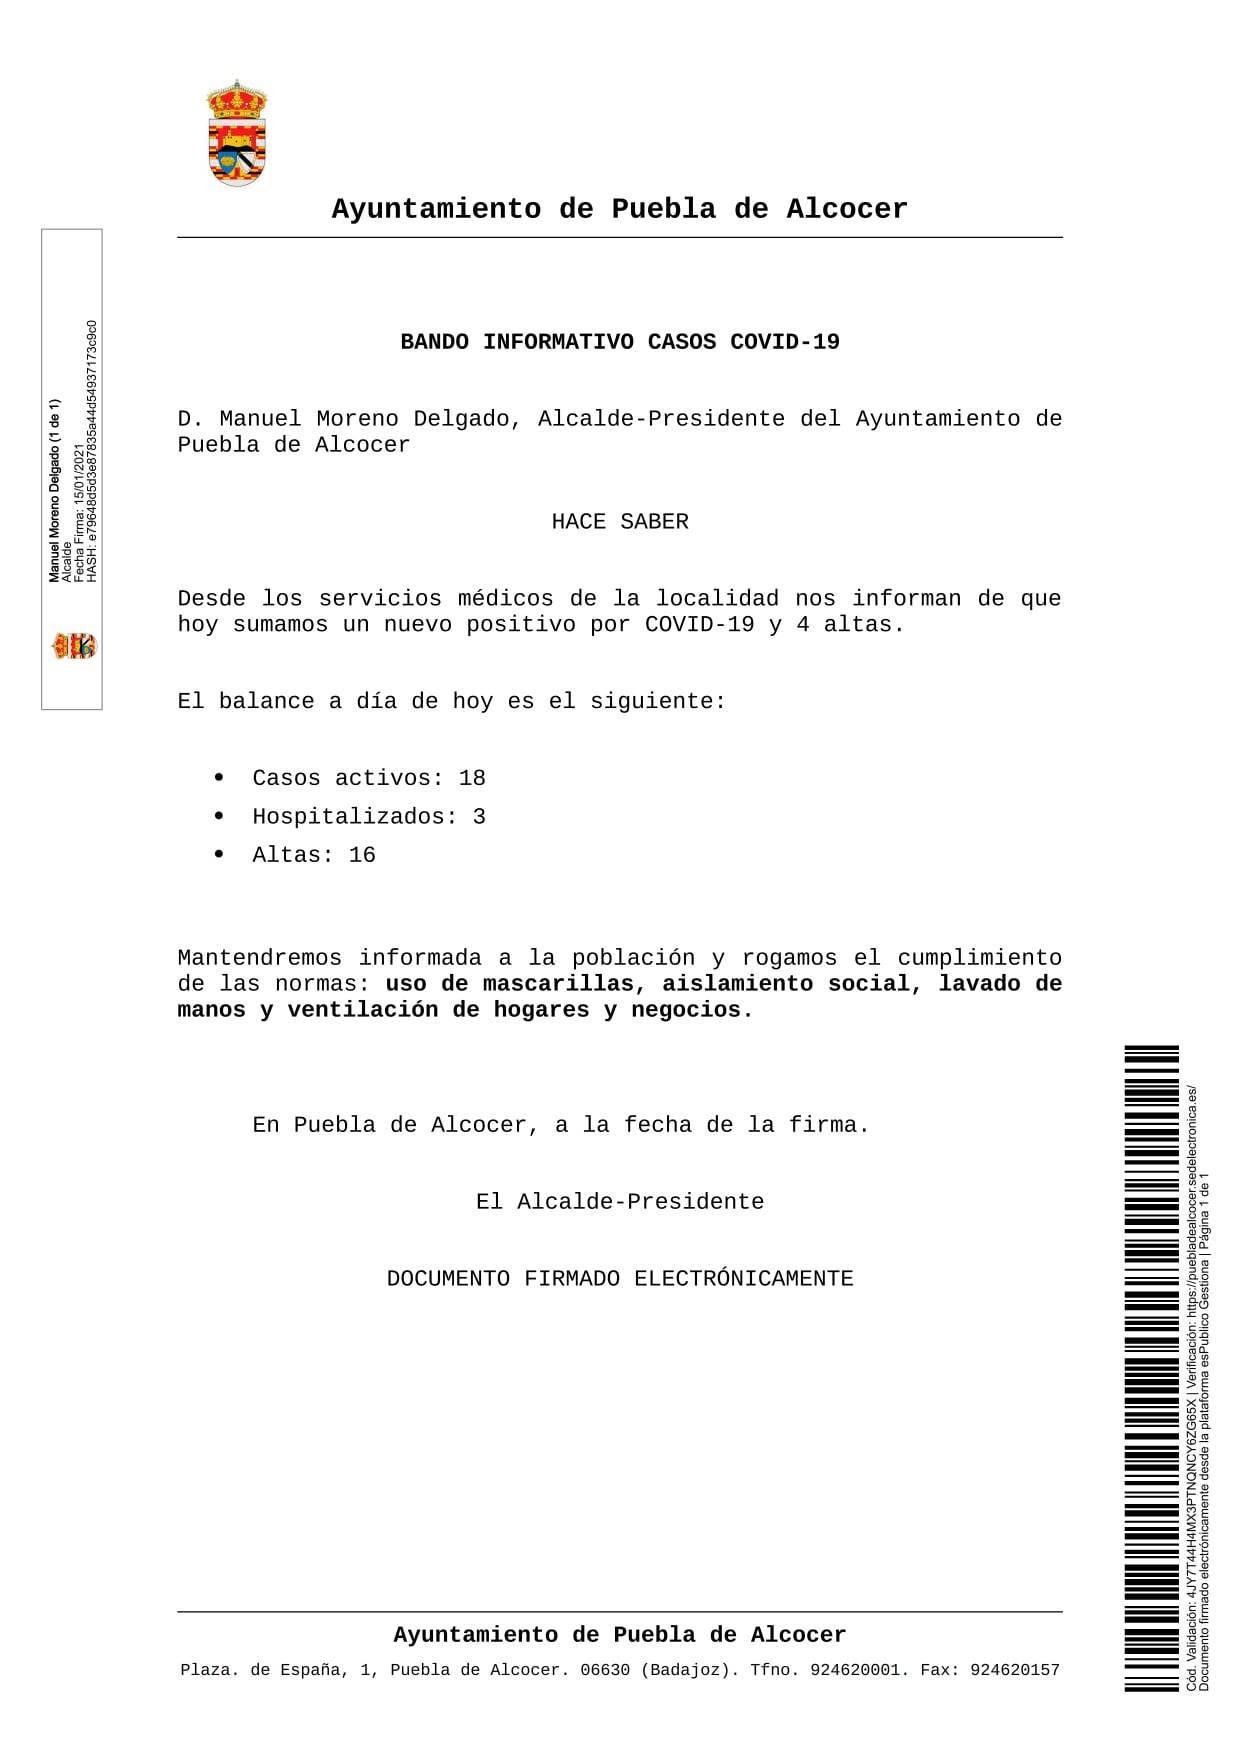 18 casos positivos activos de COVID-19 (enero 2021) - Puebla de Alcocer (Badajoz)